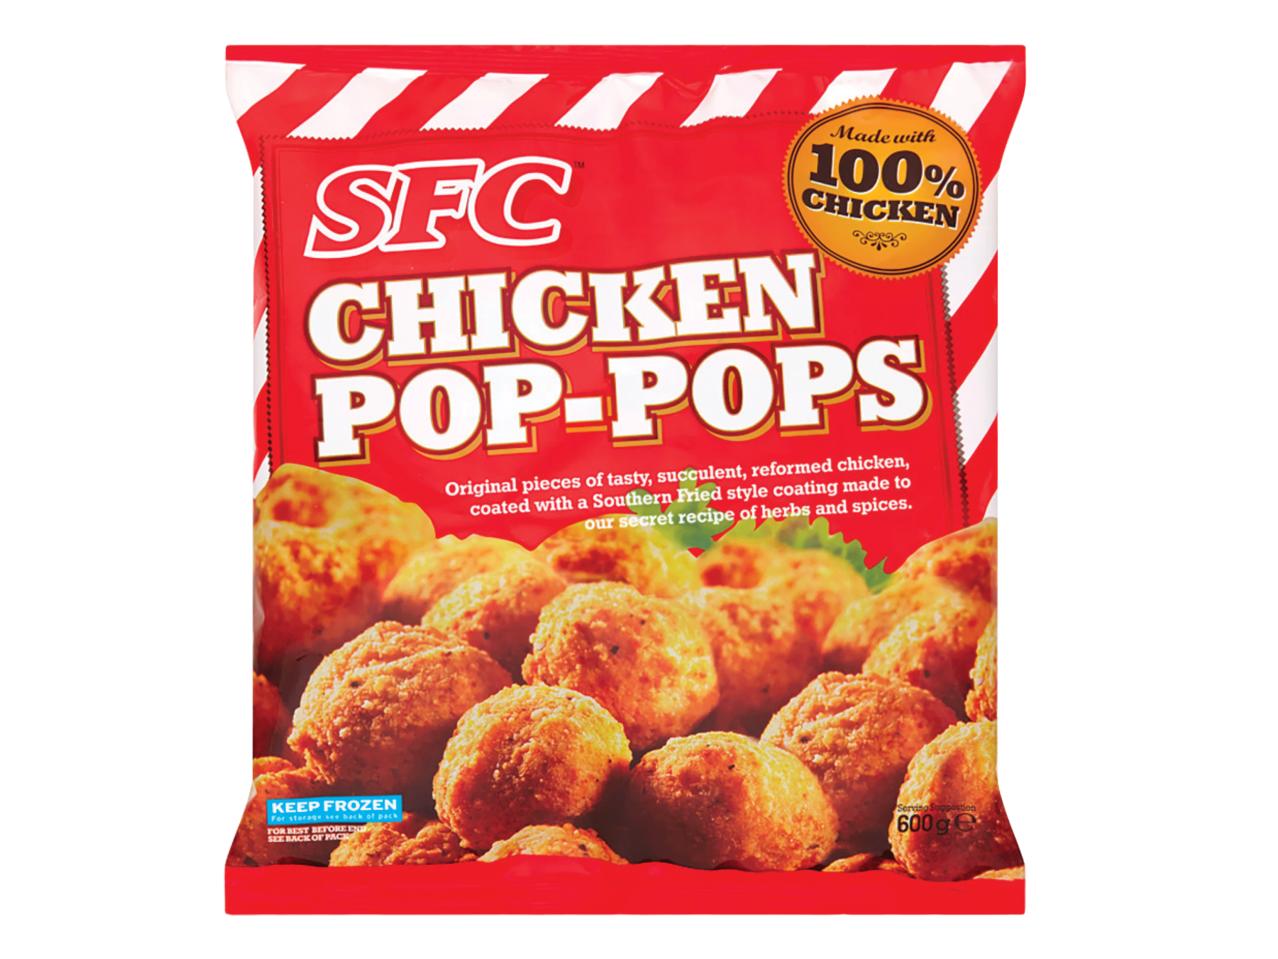 SFC Chicken Poppets